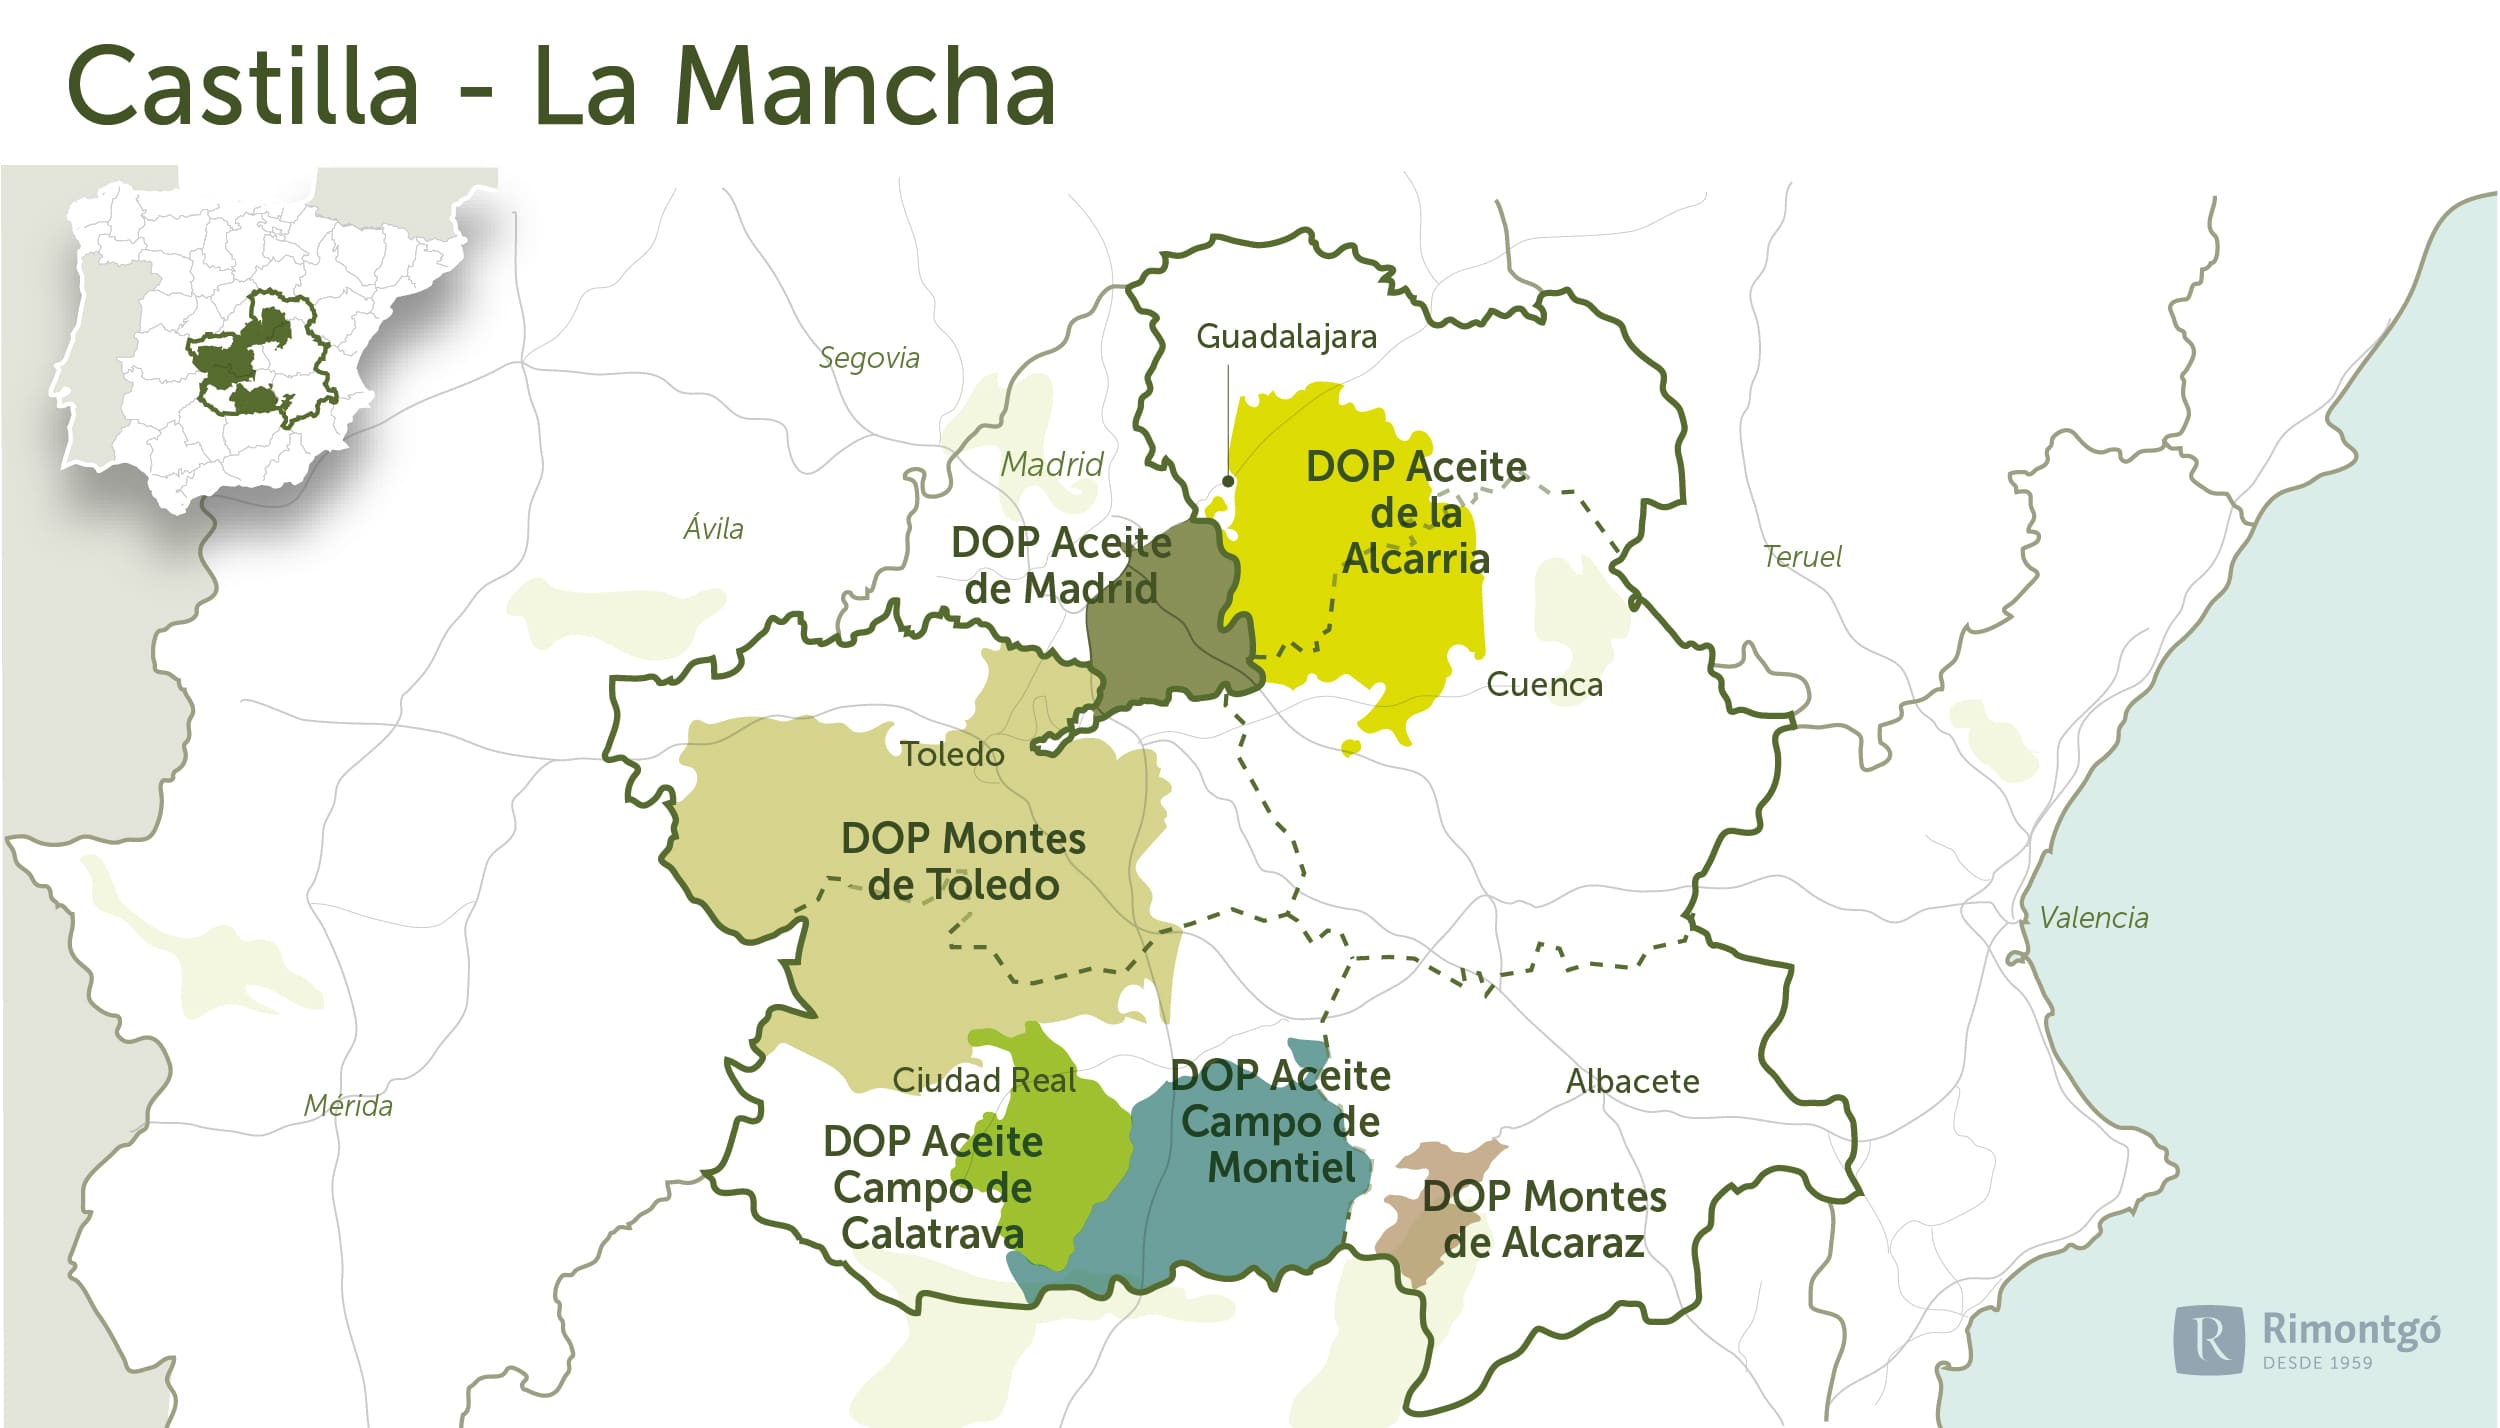 Castilla-La Mancha / Madrid